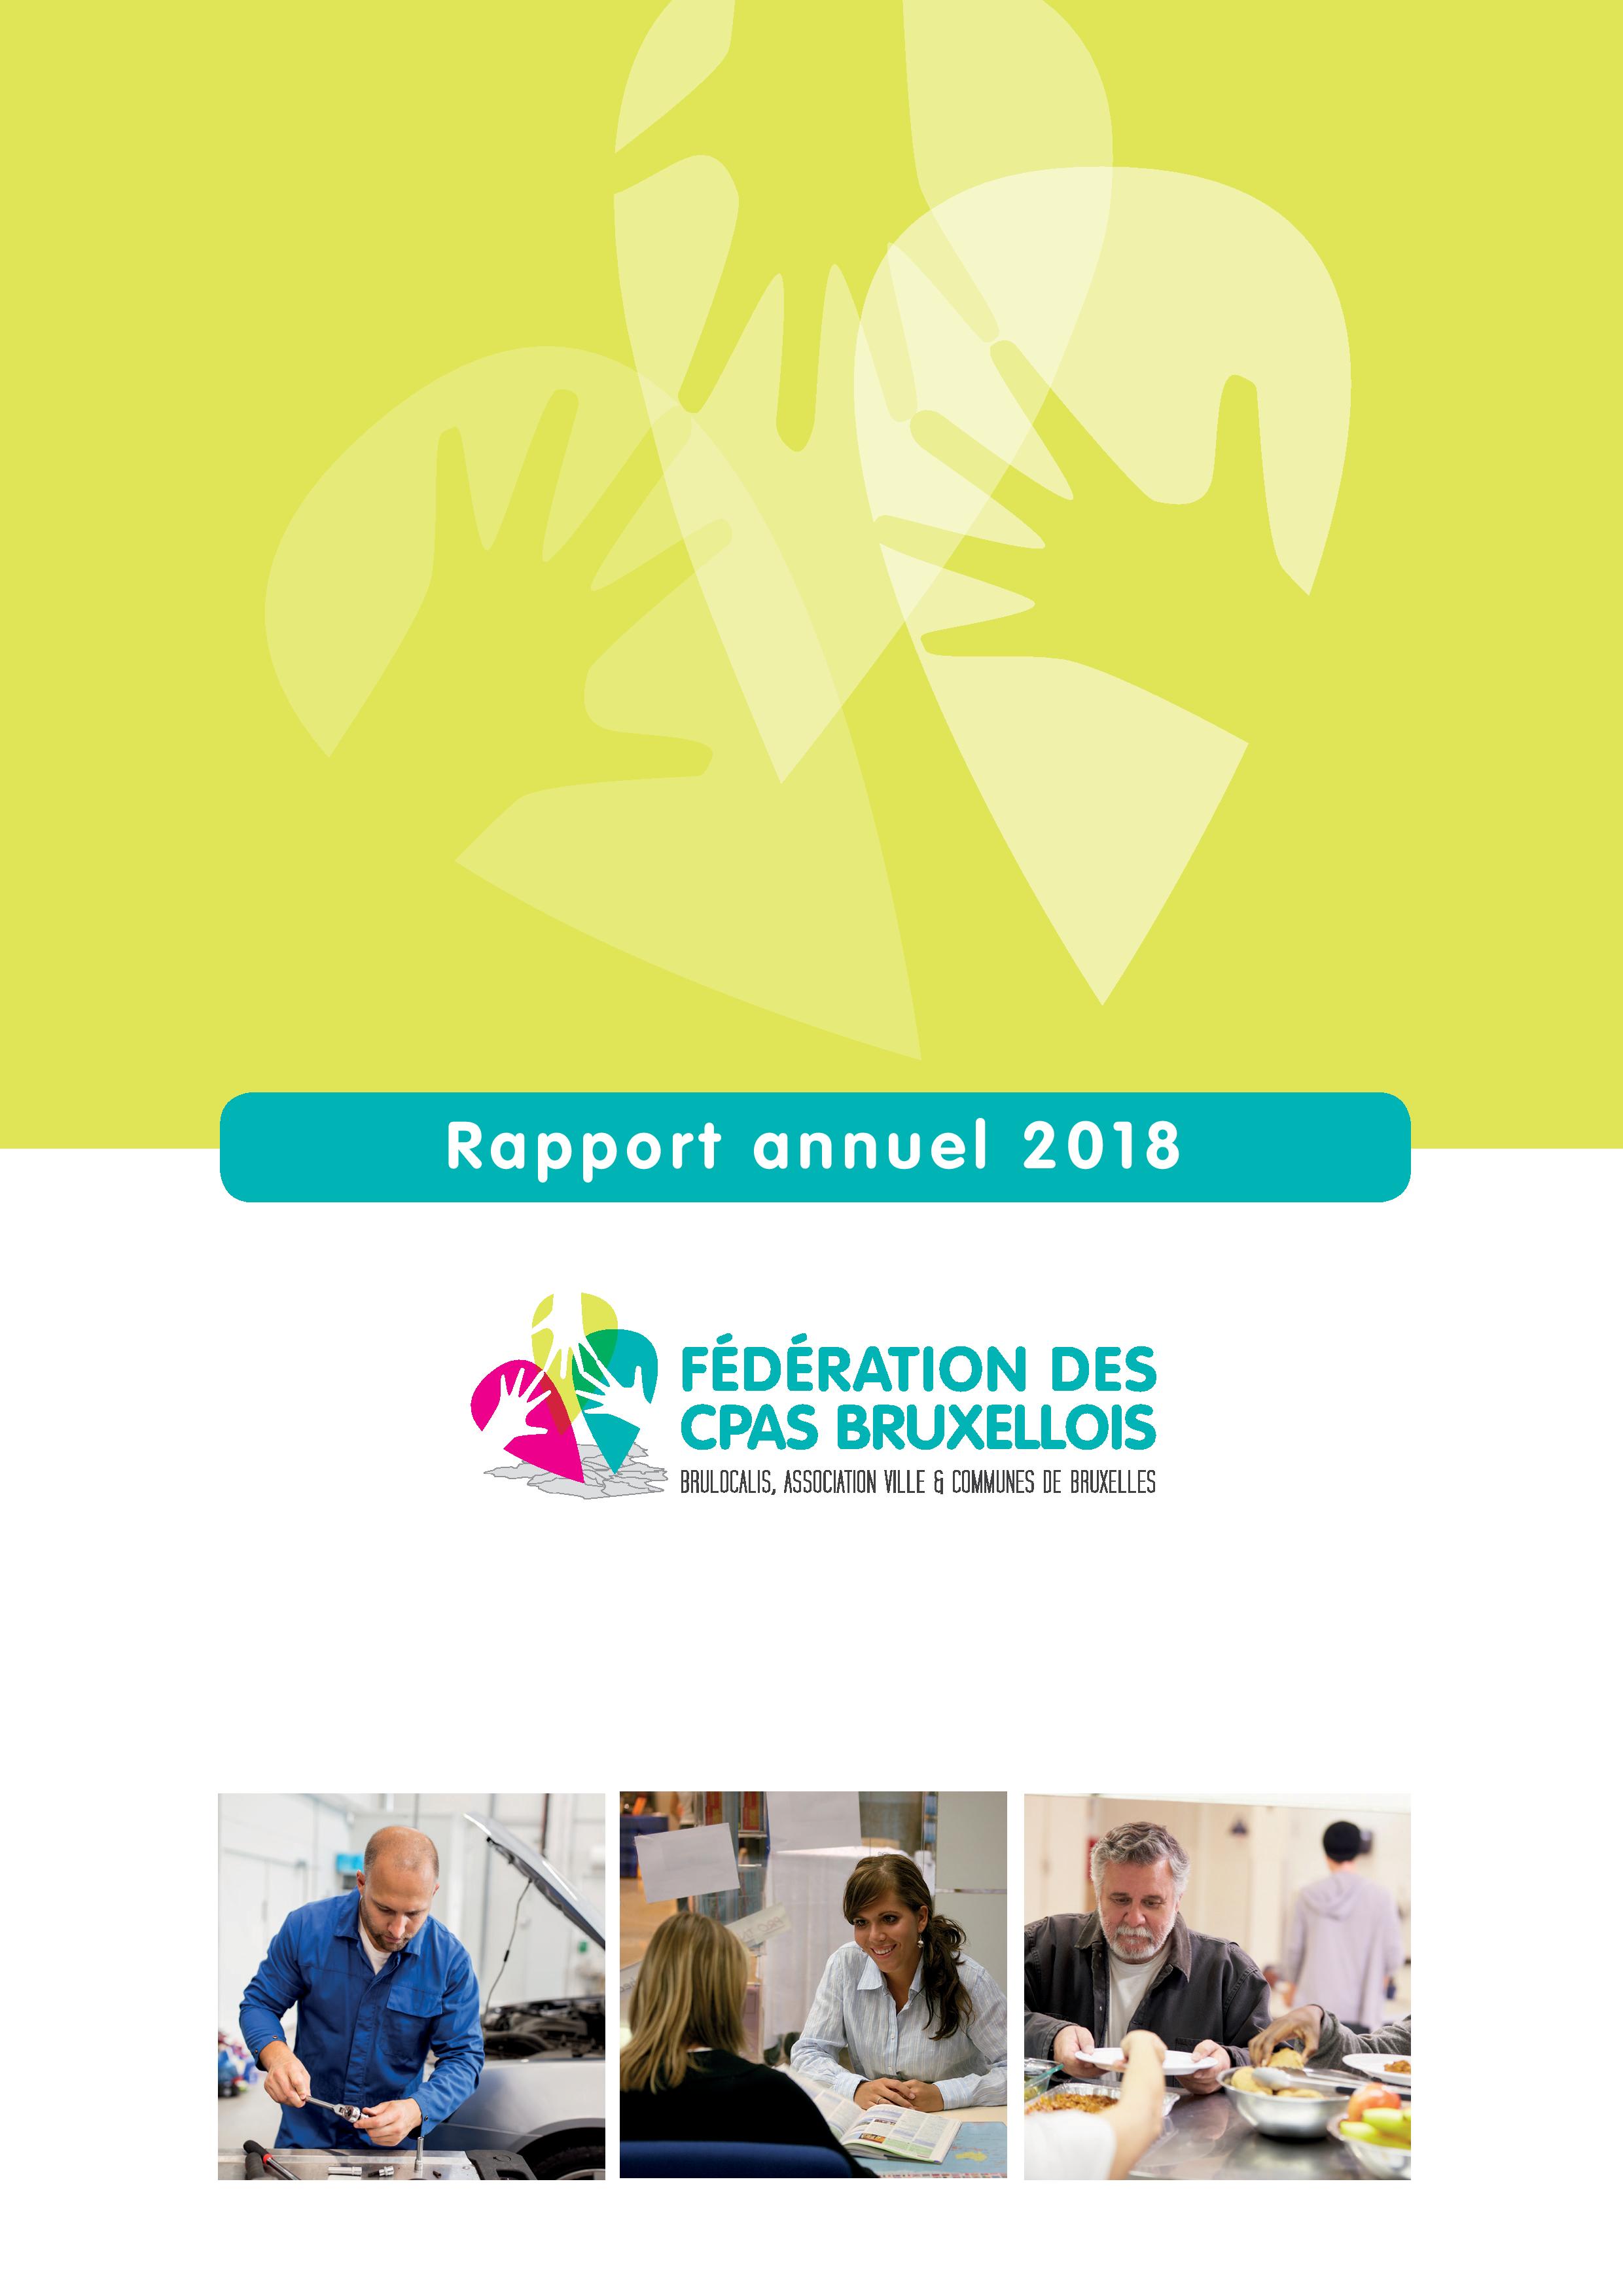 Rapport annuel de la Fédération des CPAS bruxellois 2018 - cover